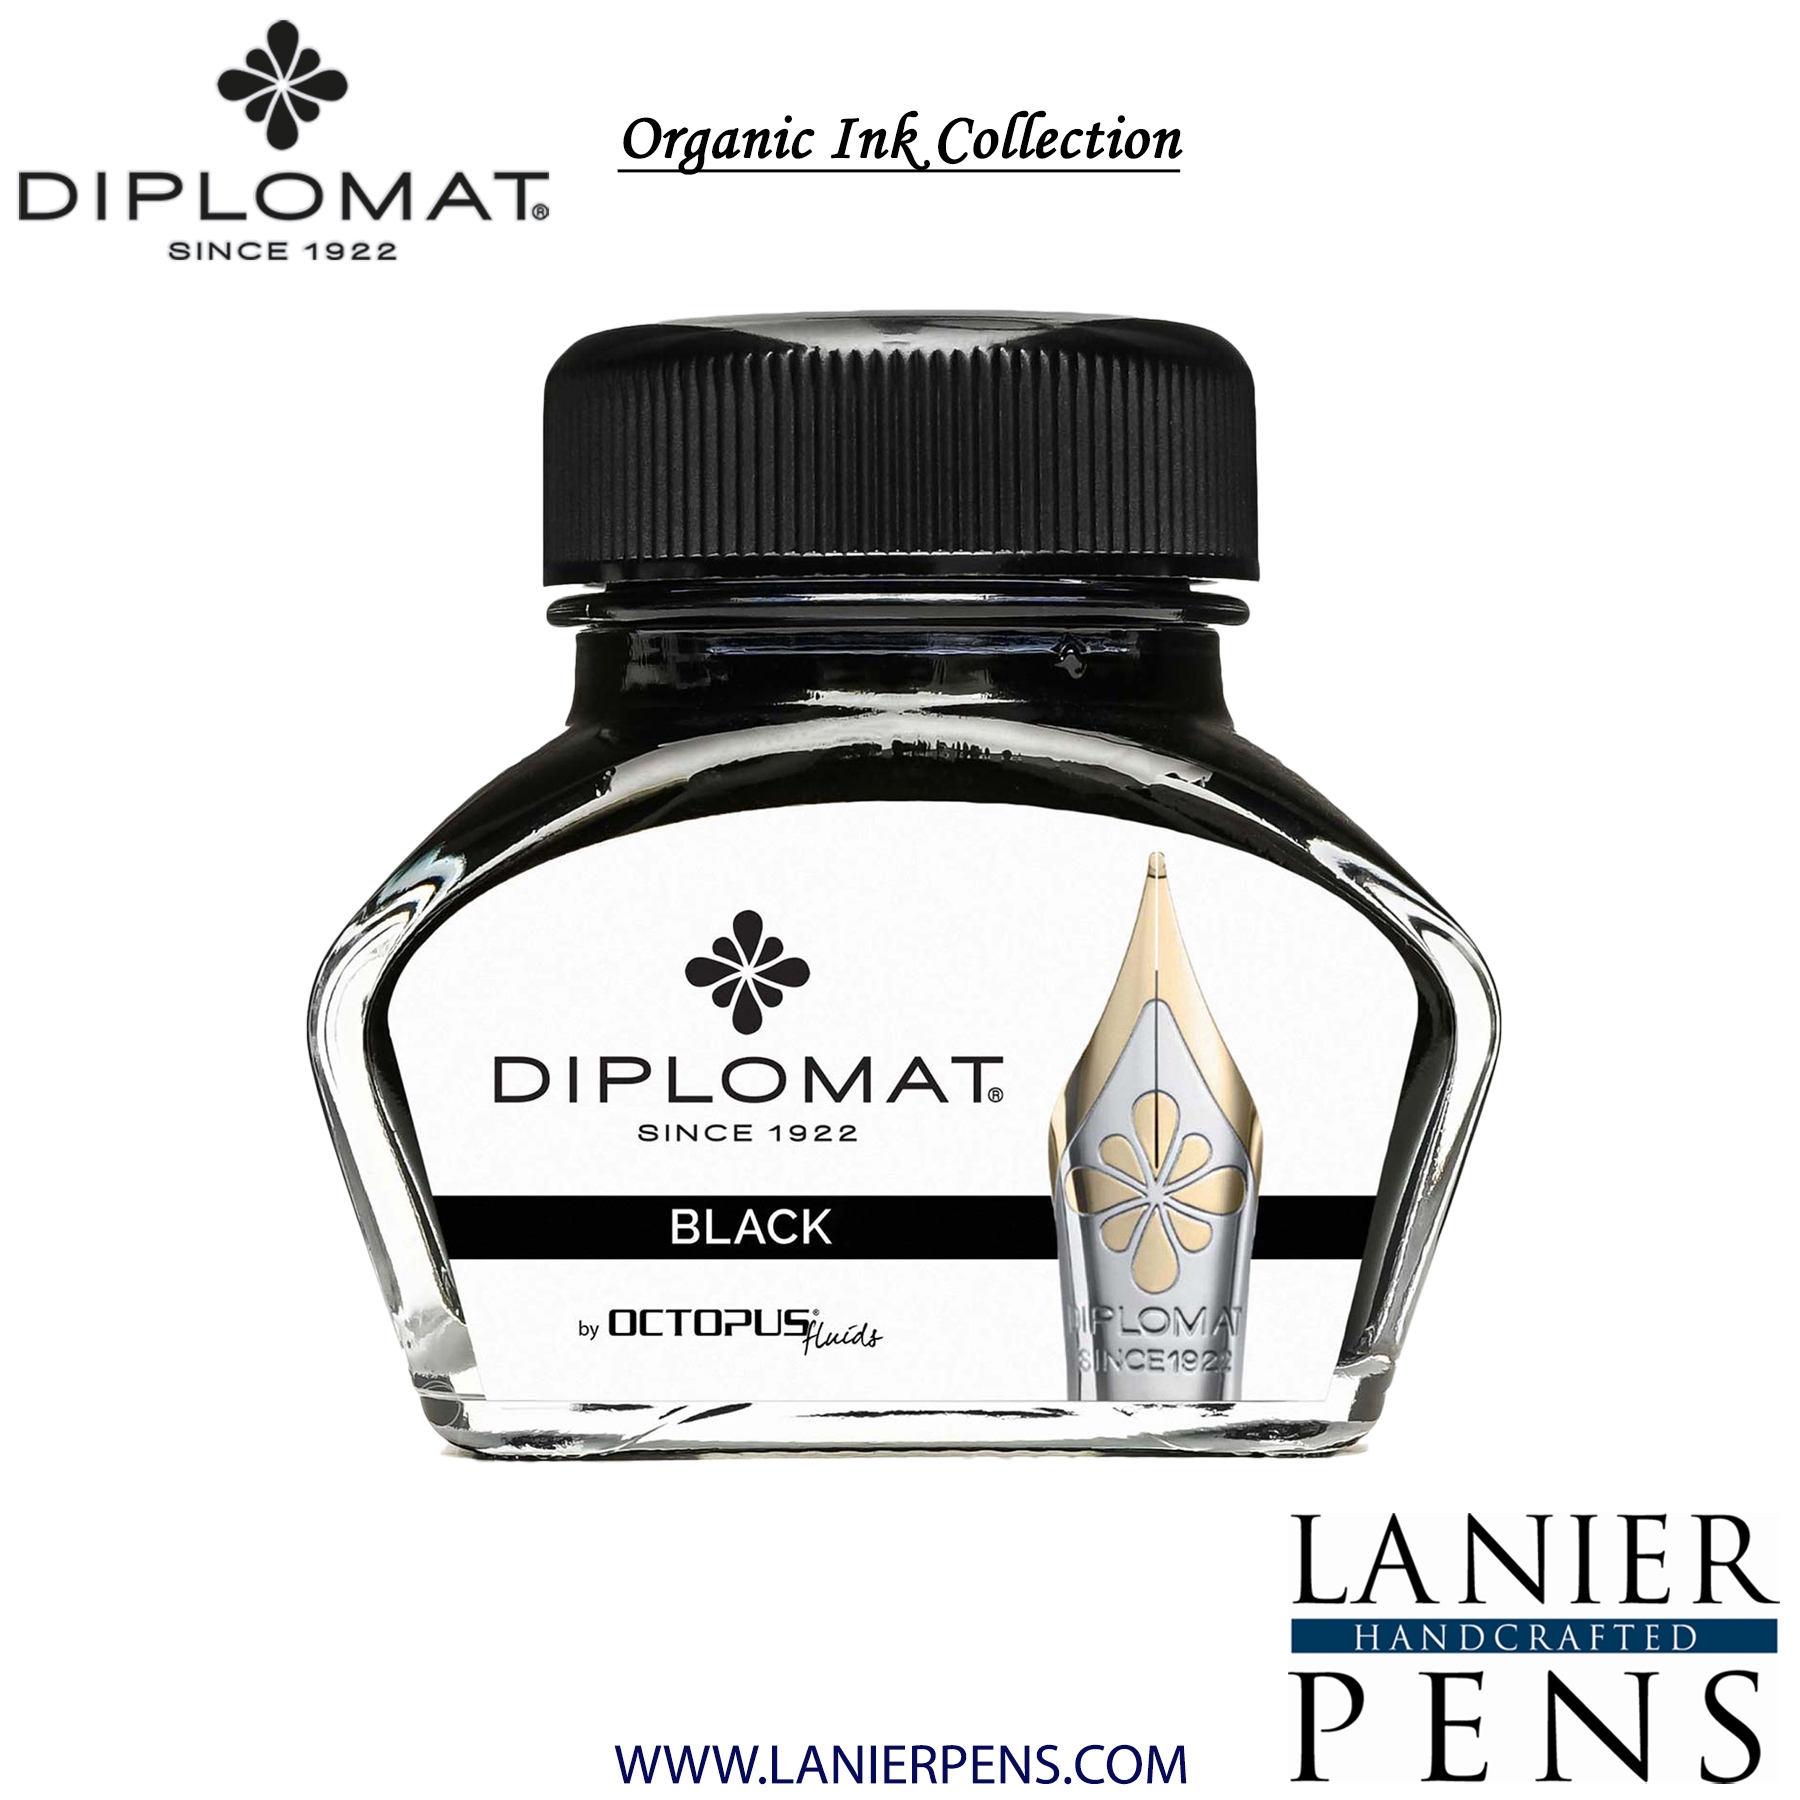 Diplomat Black Ink Bottle, 30ml by Lanier Pens, lanierpens, lanierpens.com, wndpens, WOOD N DREAMS, Pensbylanier